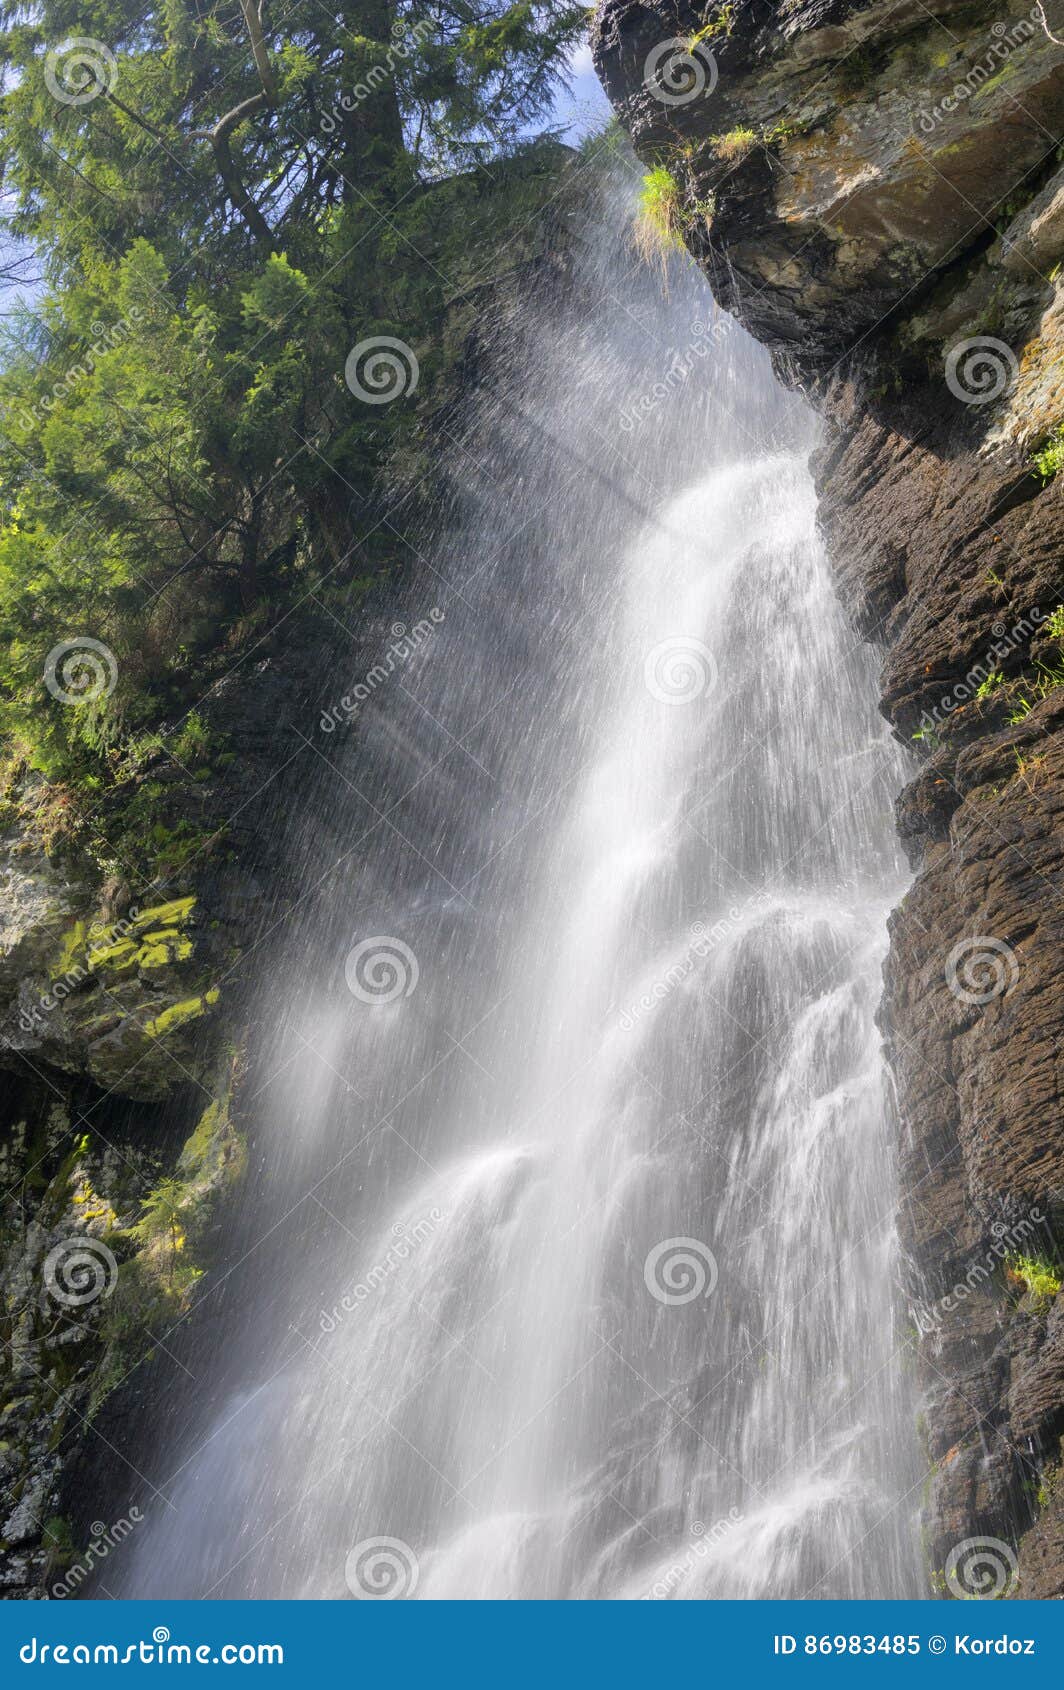 vodopad bystre waterfall